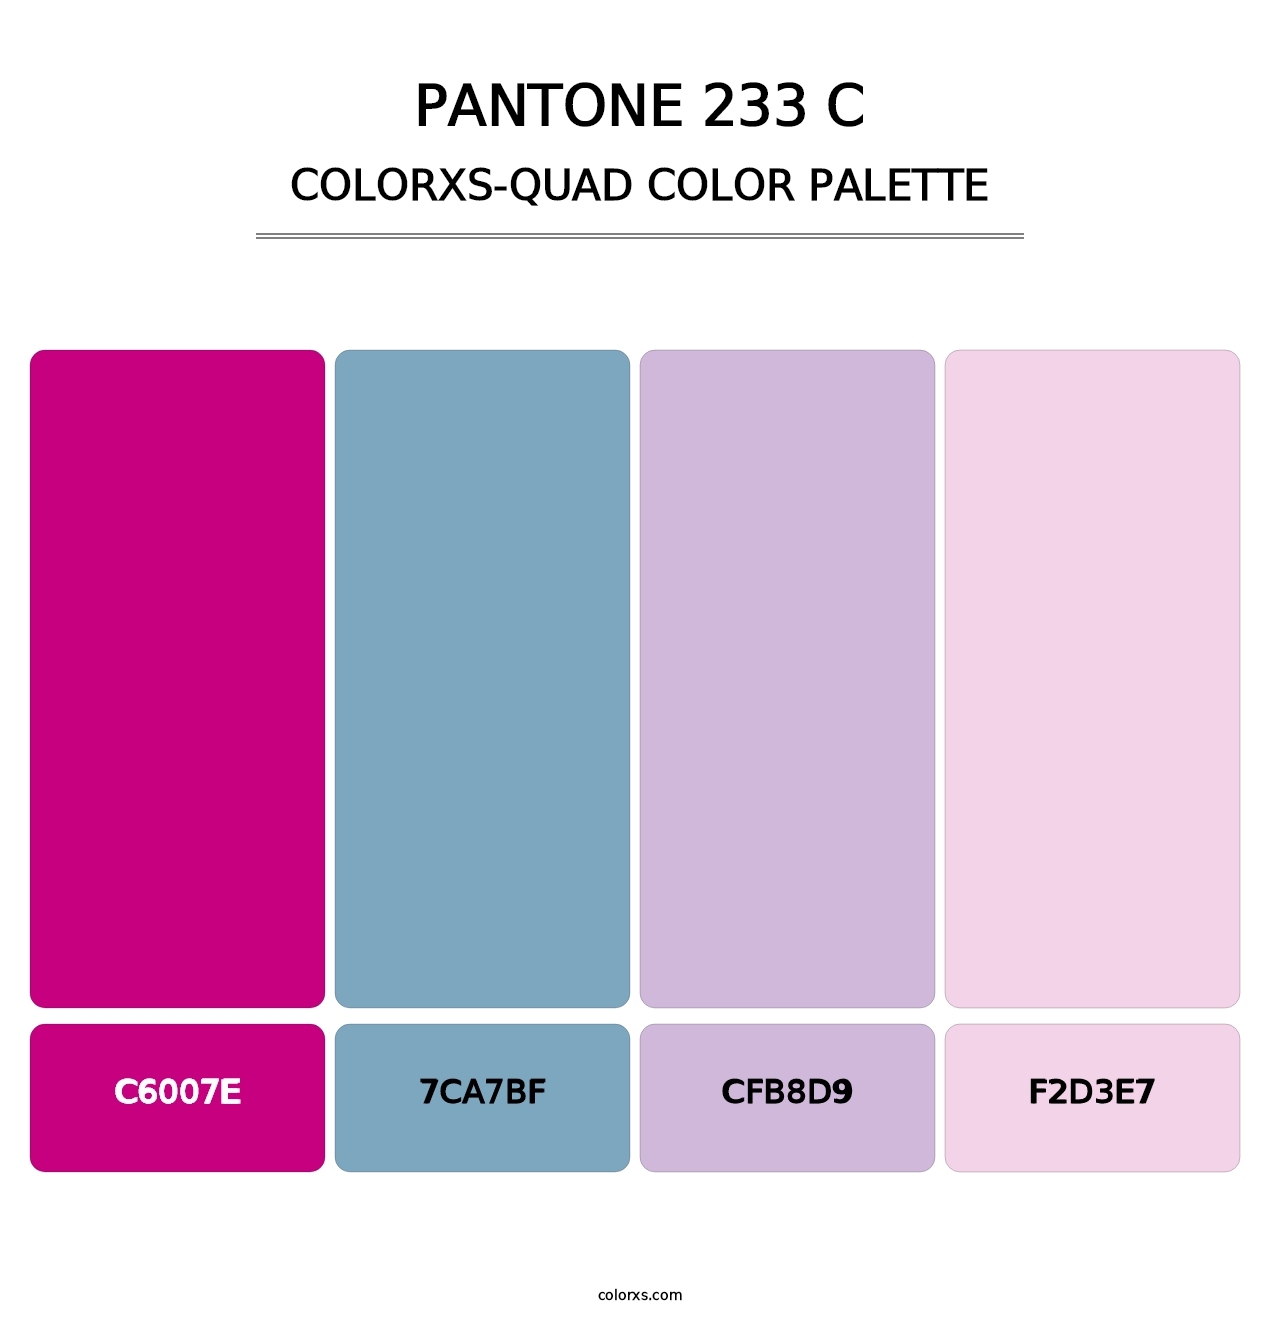 PANTONE 233 C - Colorxs Quad Palette